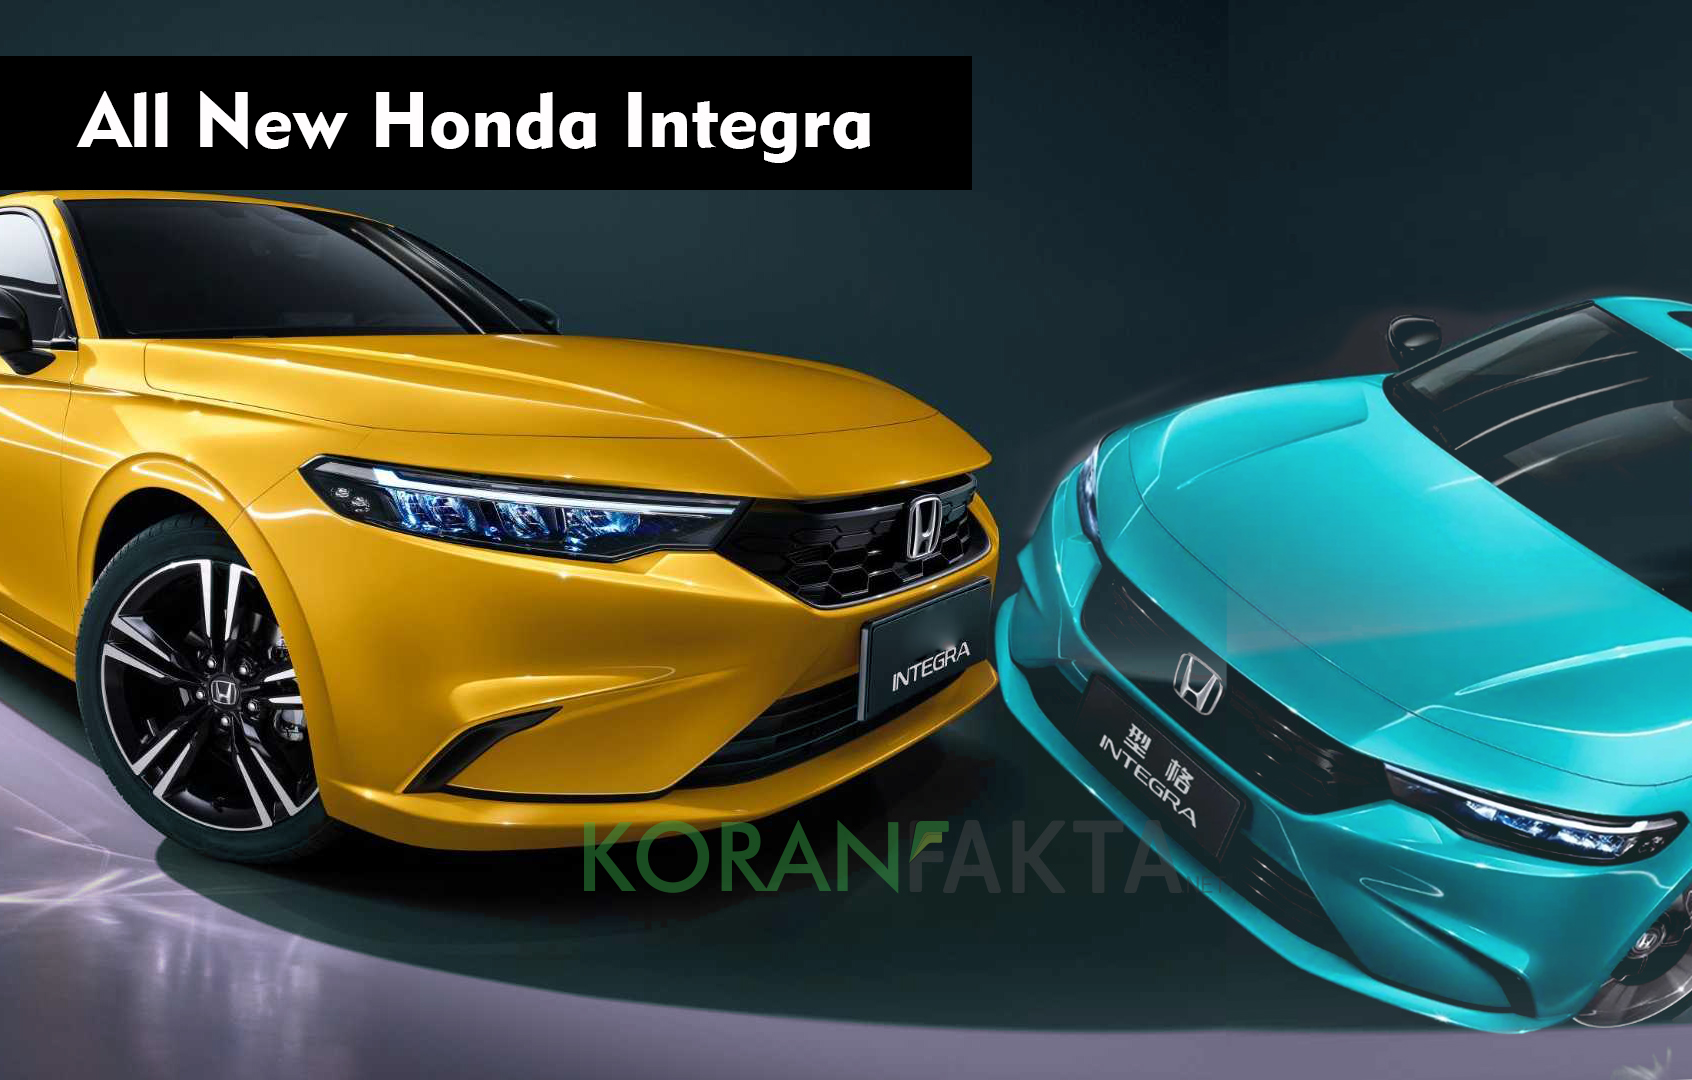 All New Honda Integra